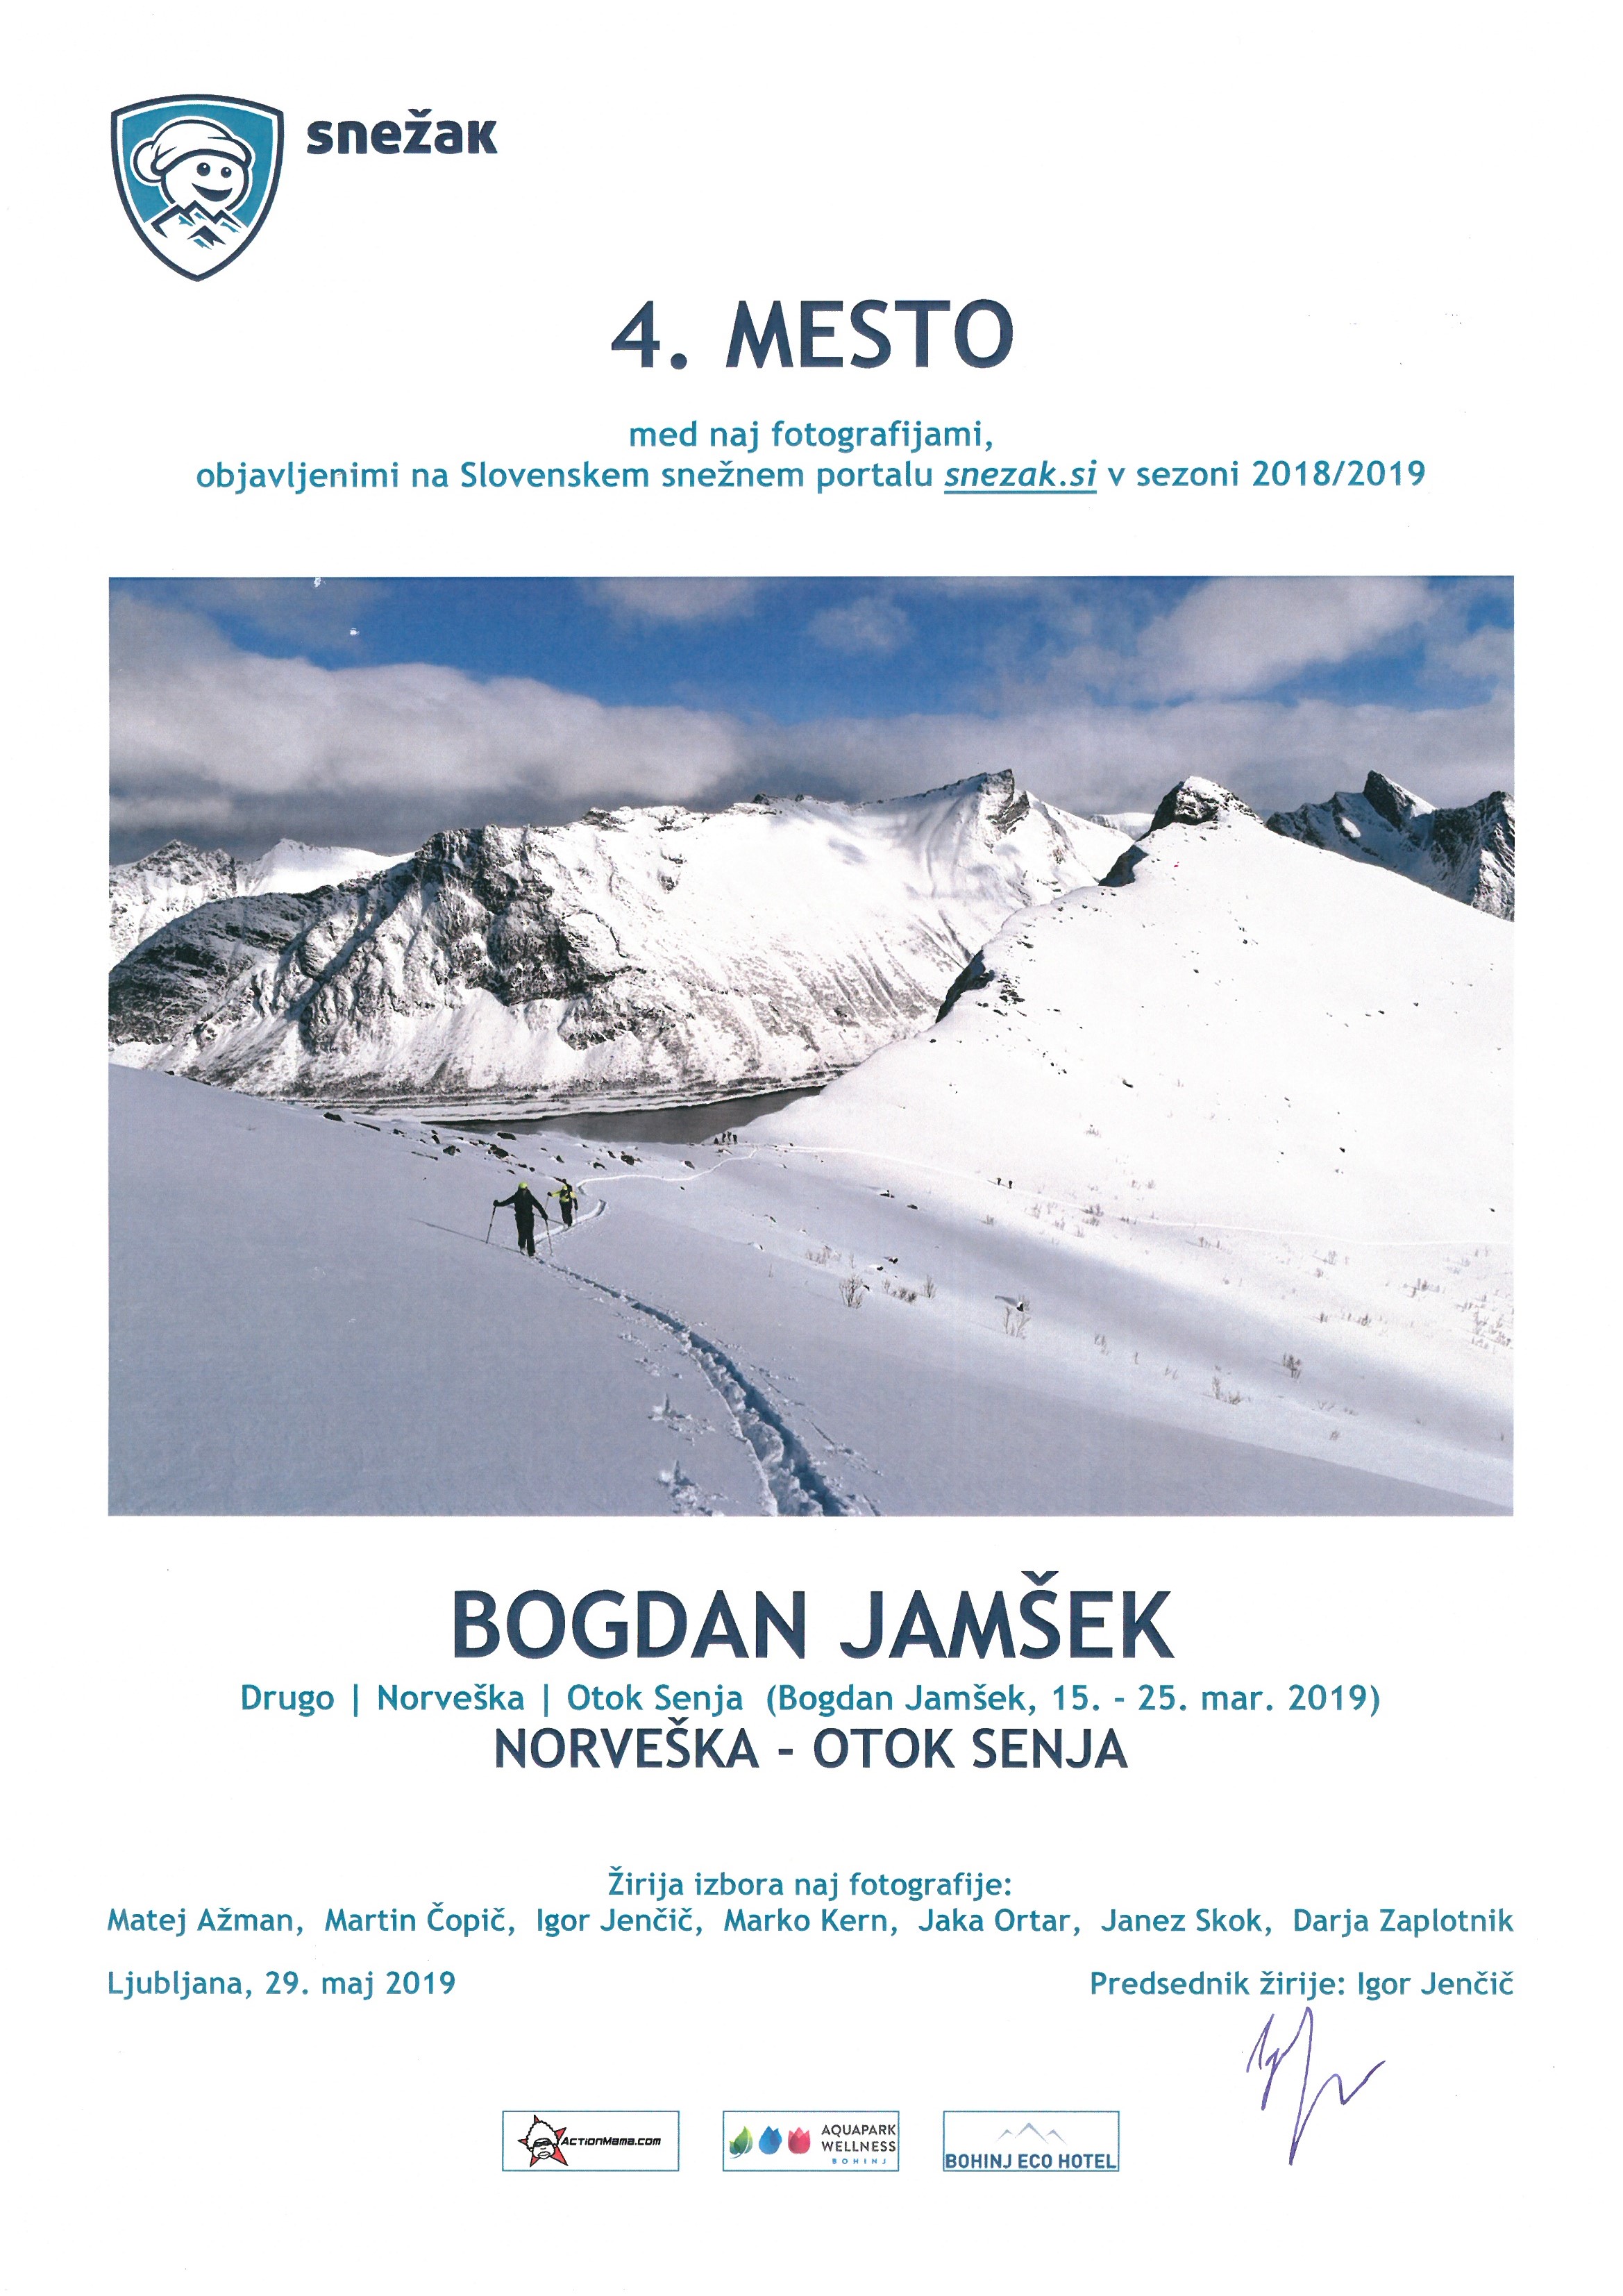 Bogdan Jamšek: Norveška - otok Senja (15. - 25. mar. 2019)